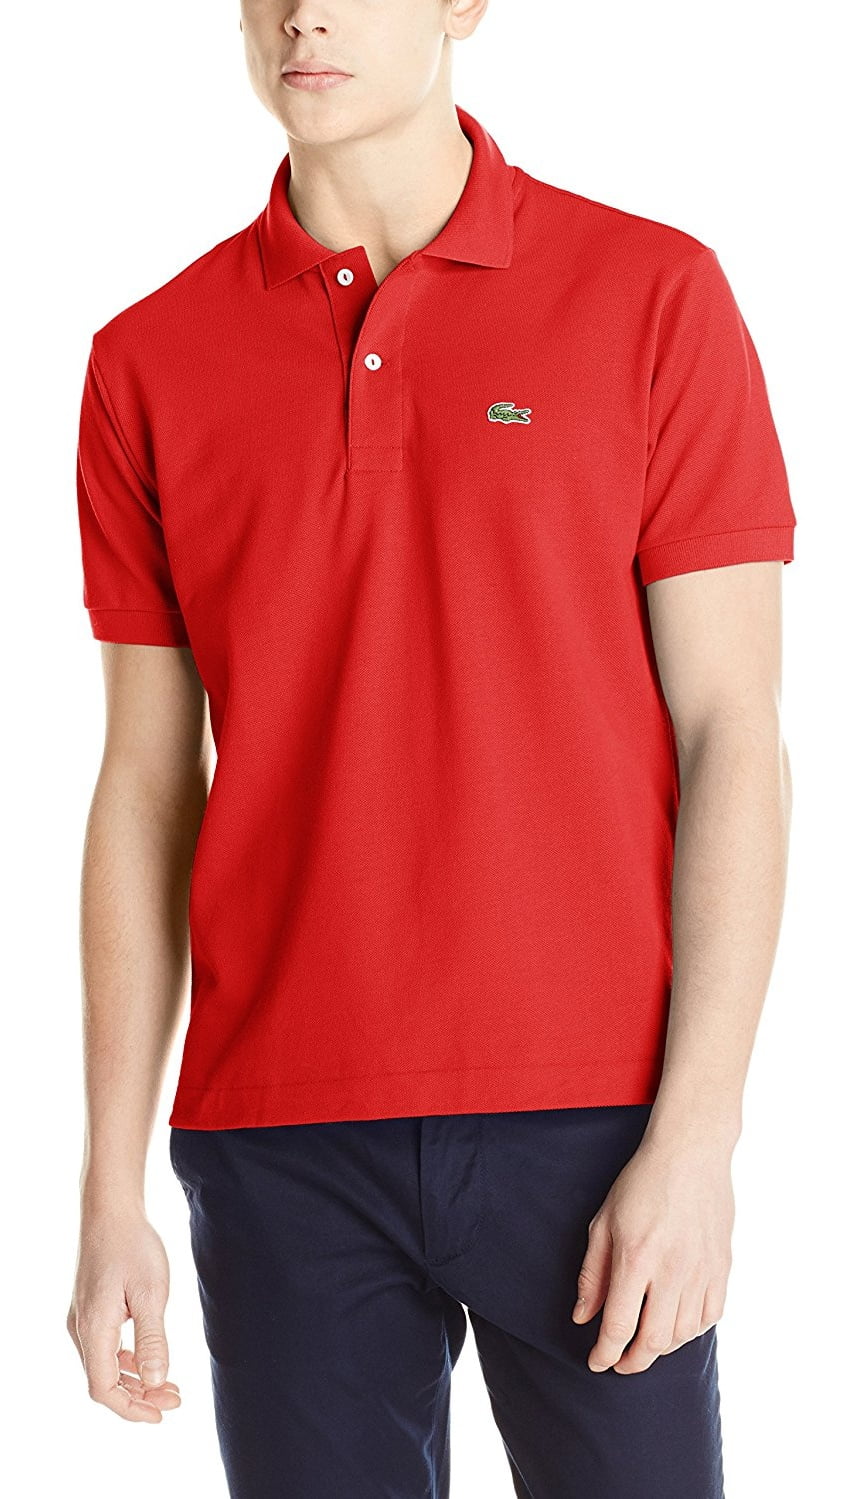 Lacoste - Lacoste Men pique Original Fit Polo Shirt - Walmart.com ...